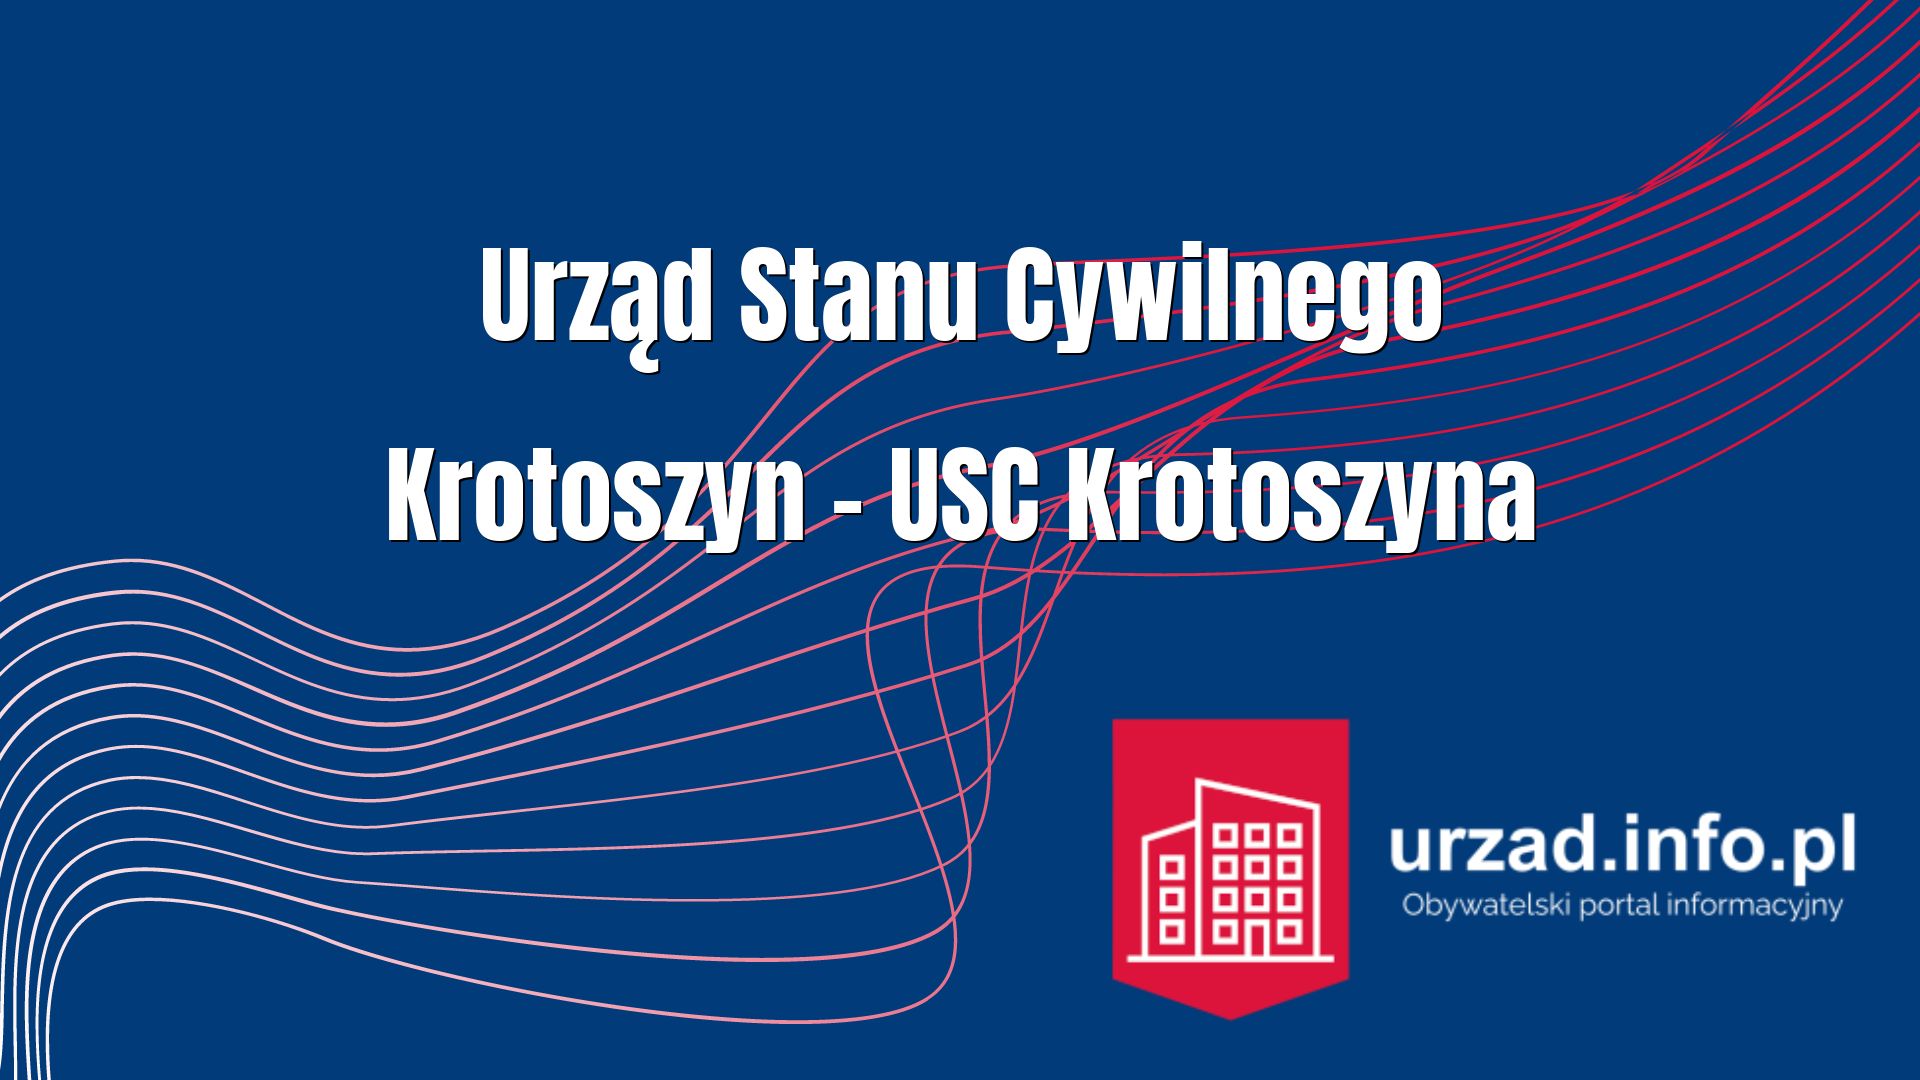 Urząd Stanu Cywilnego Krotoszyn – USC Krotoszyna